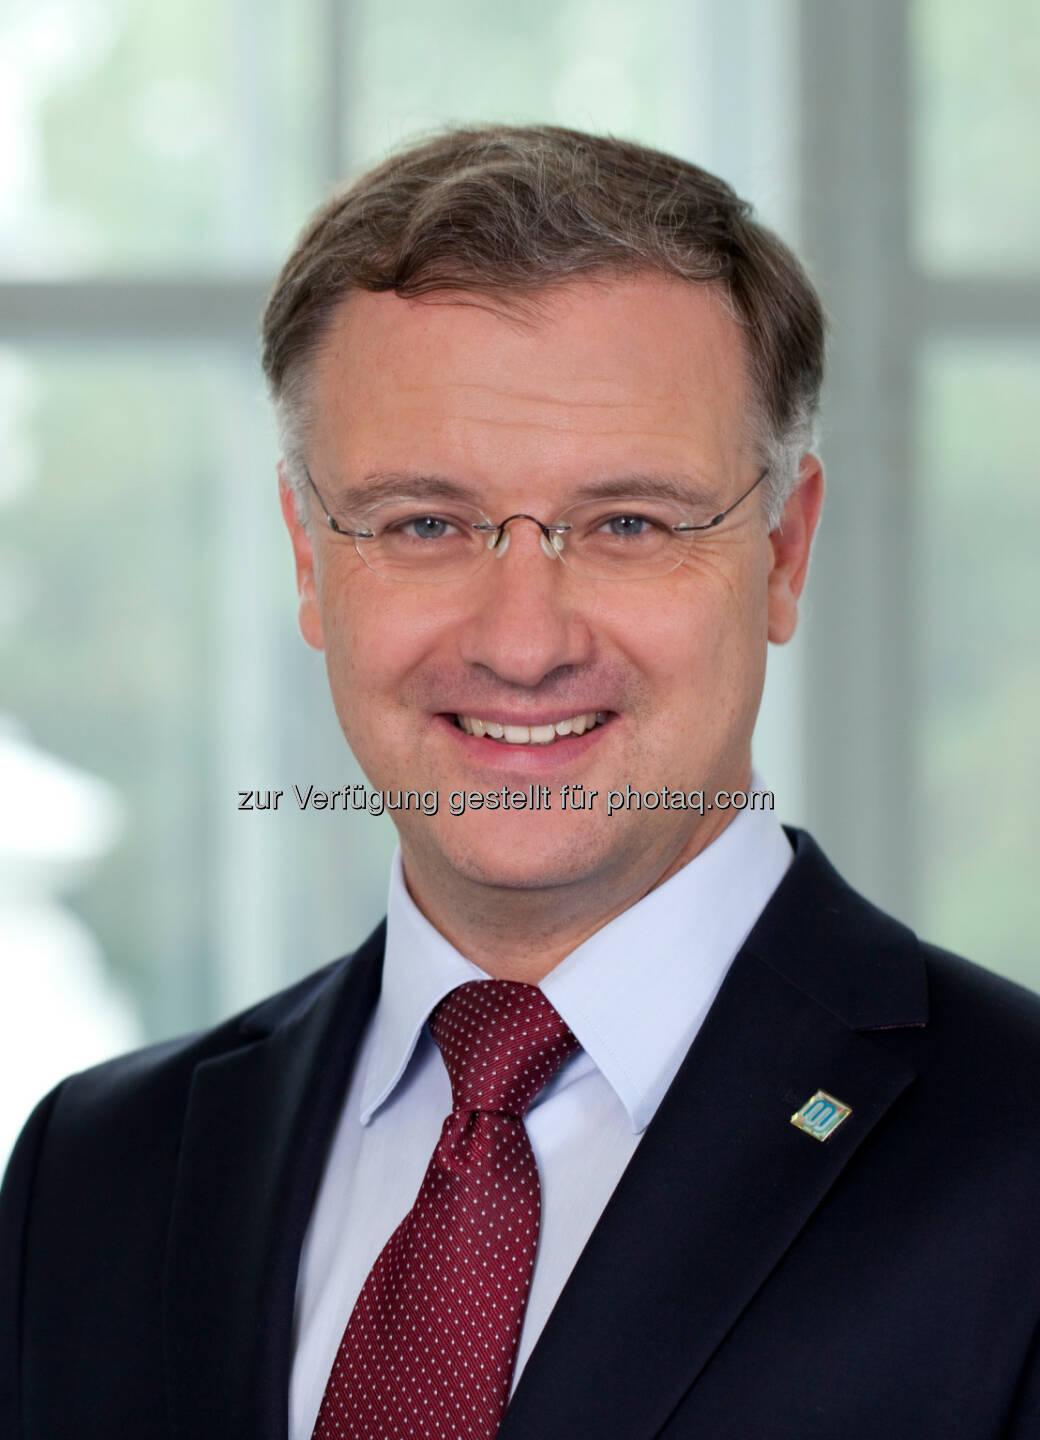 Markus Müller zum neuen Rektor der MedUni Wien gewählt